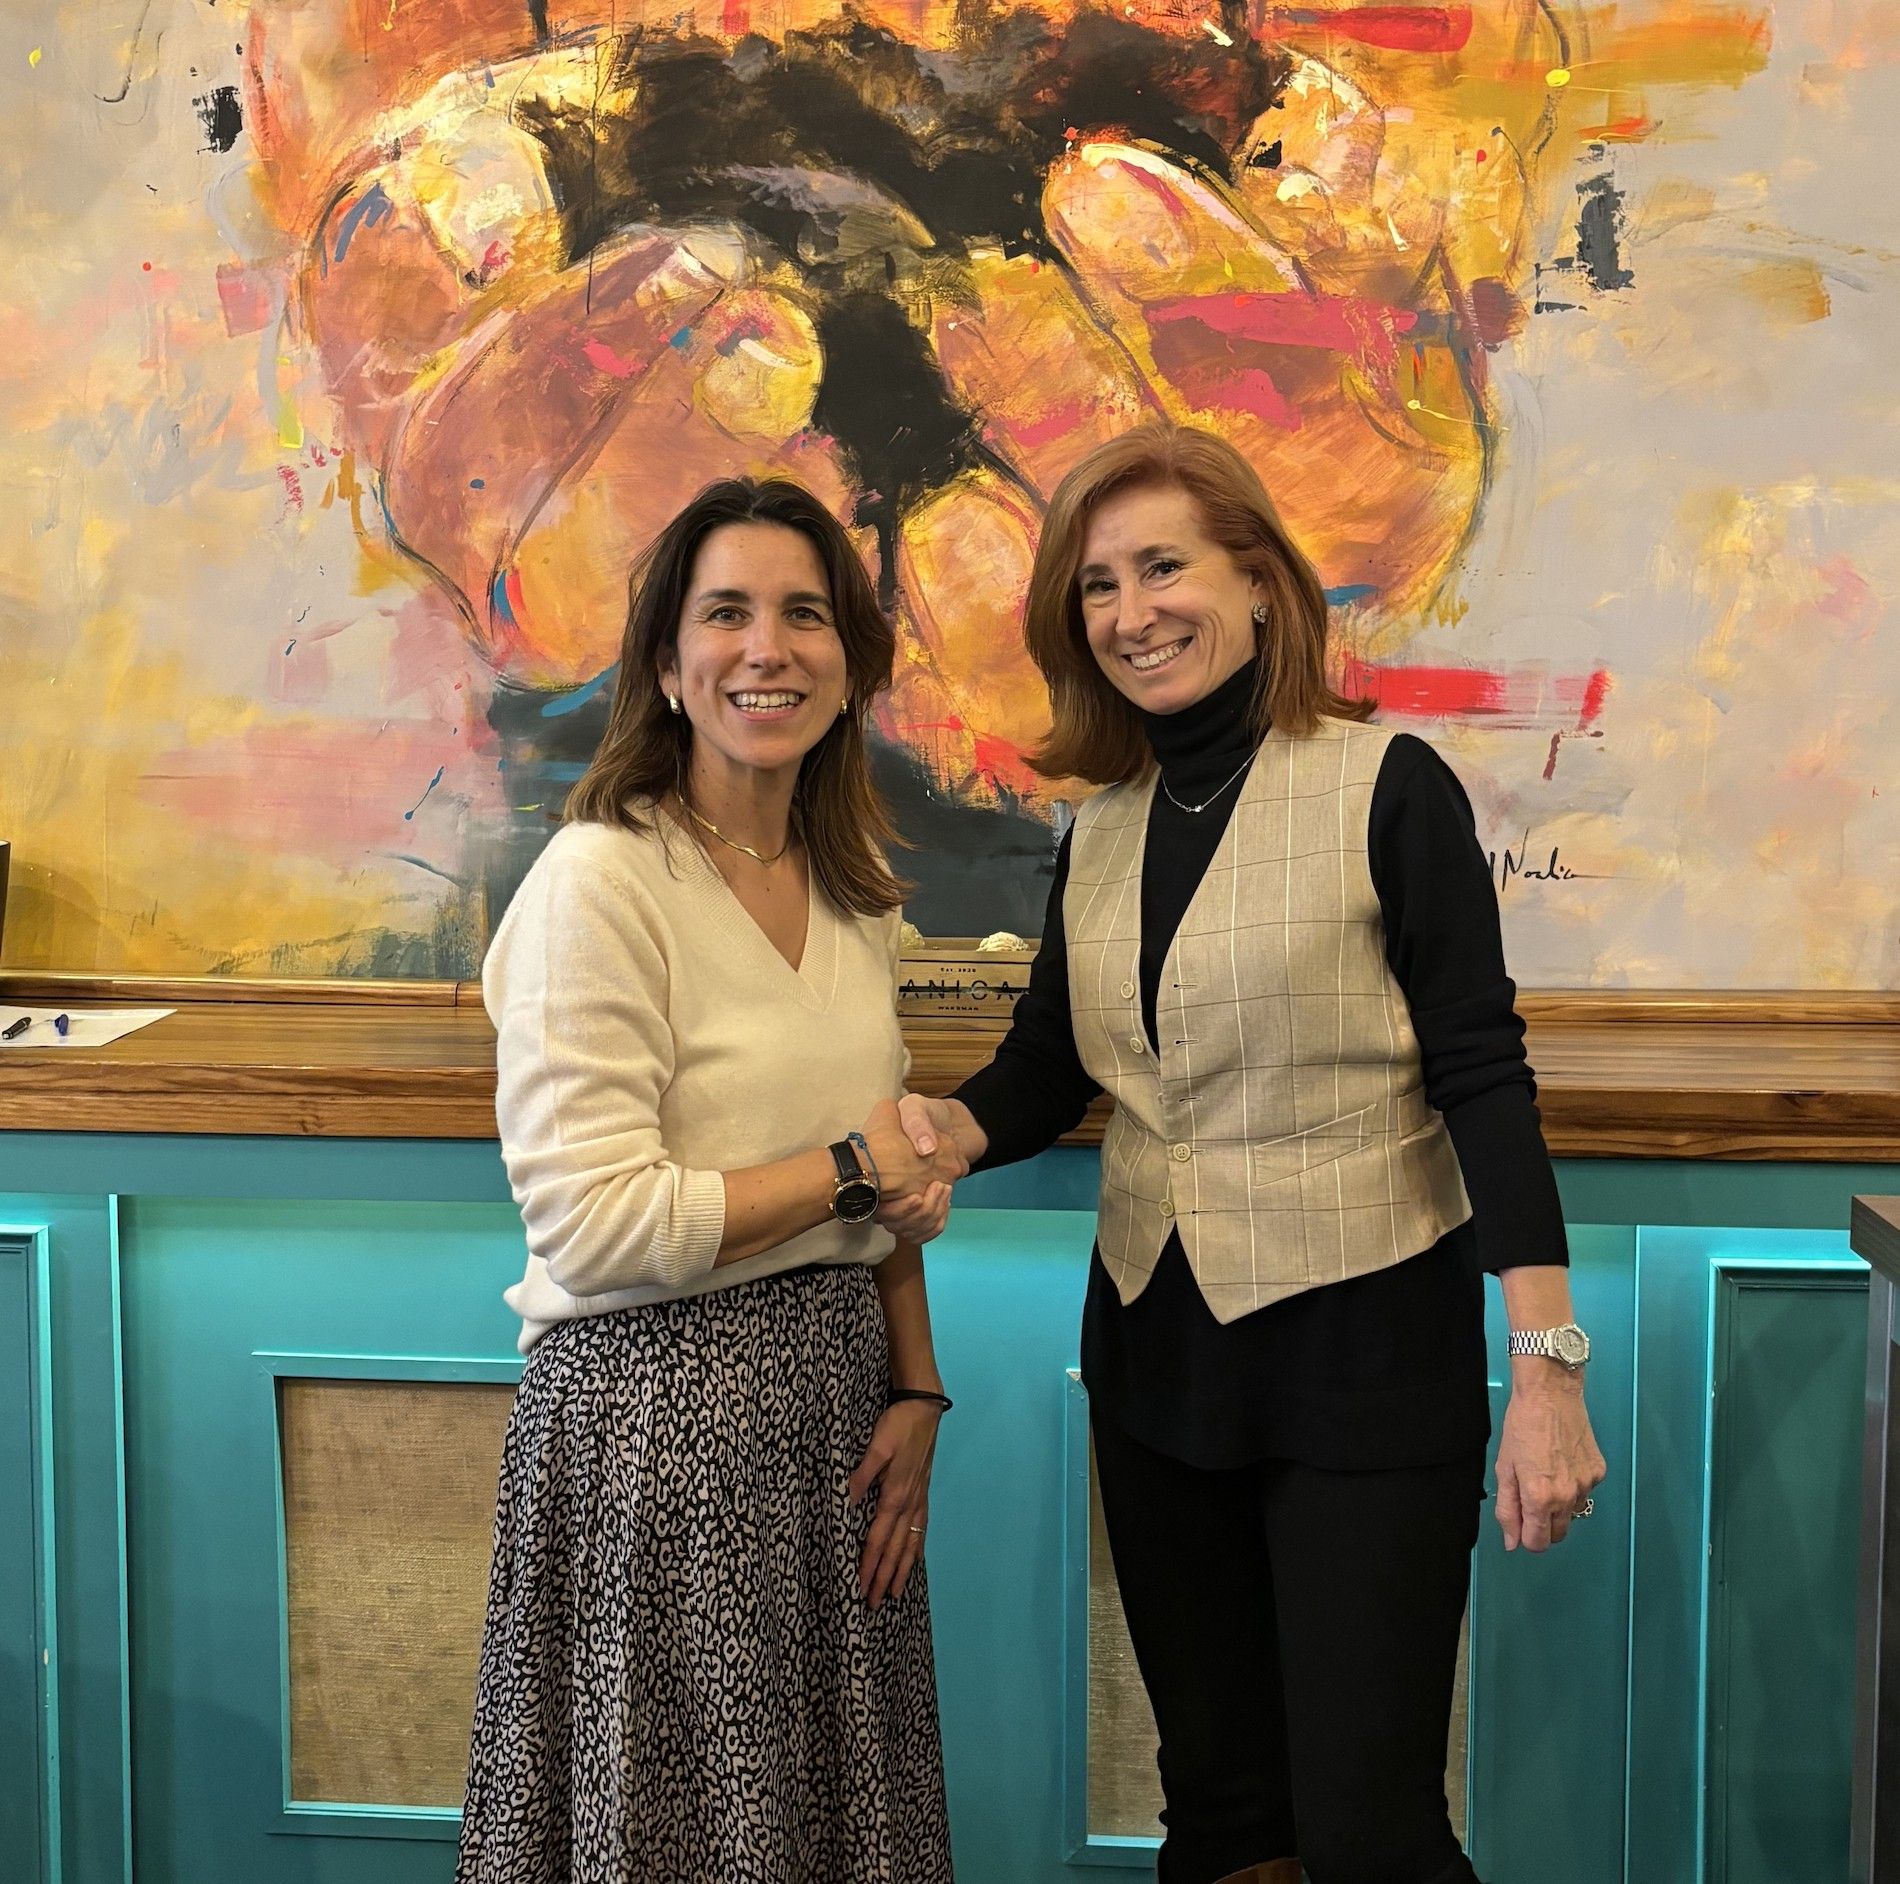 El acuerdo fue firmado por Mercedes Pardo, presidenta de Educación Azul y por Marta Pérez Dorao, presidenta de InspiringGirls.